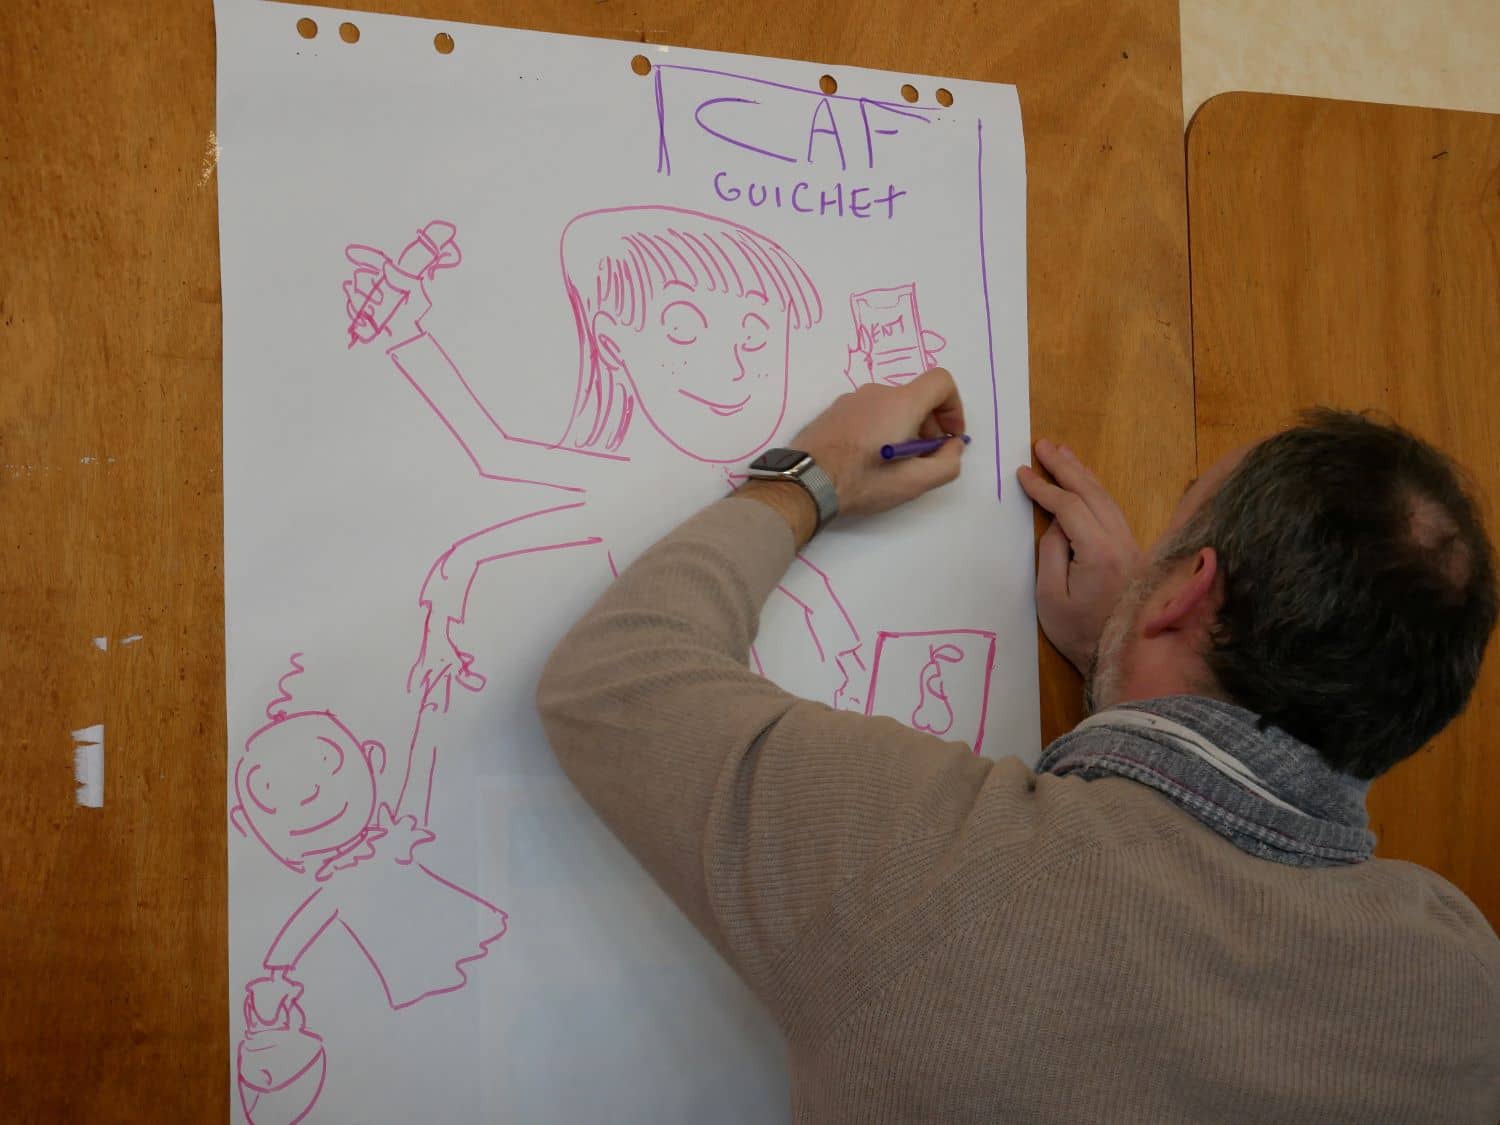 Une personne dessine sur une feuille de paperboard